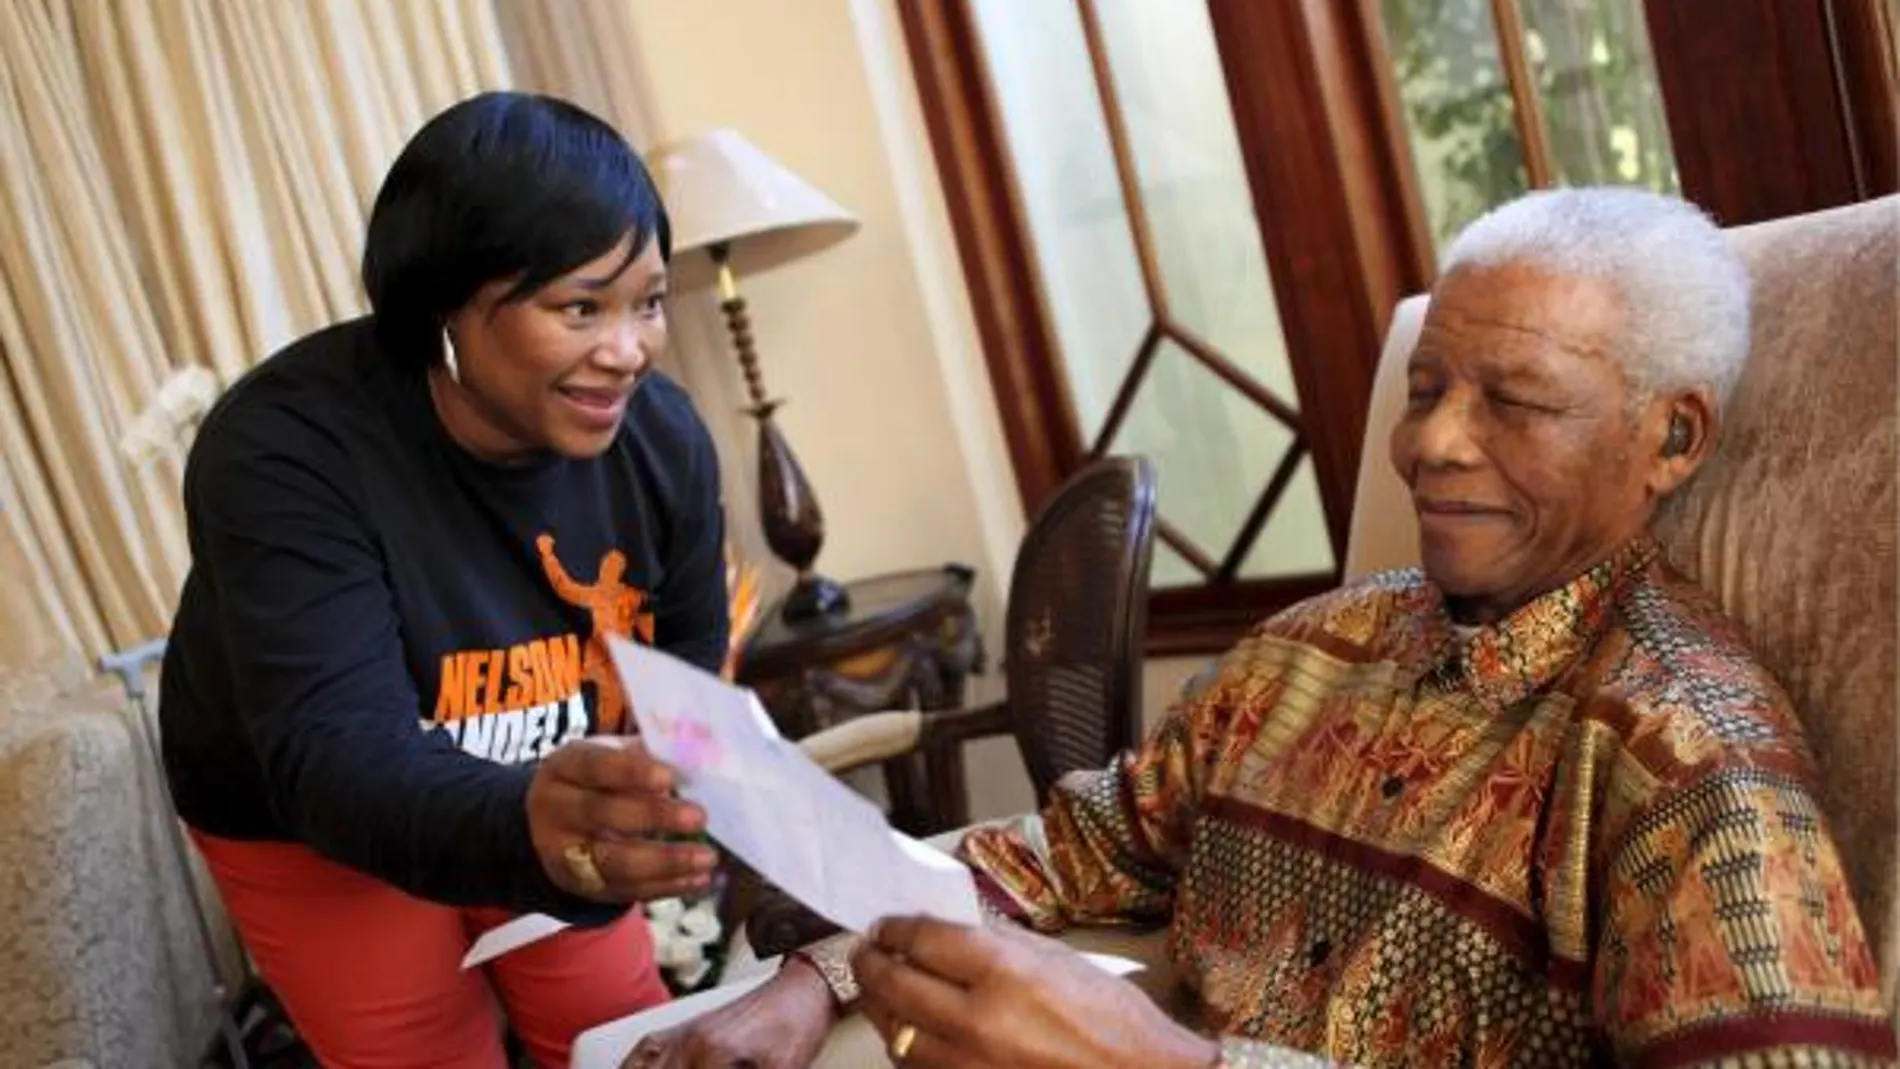 Nelson Mandela lee una carta junto a Zindzi, en su casa en Johannesburgo, la víspera de su cumpleaños